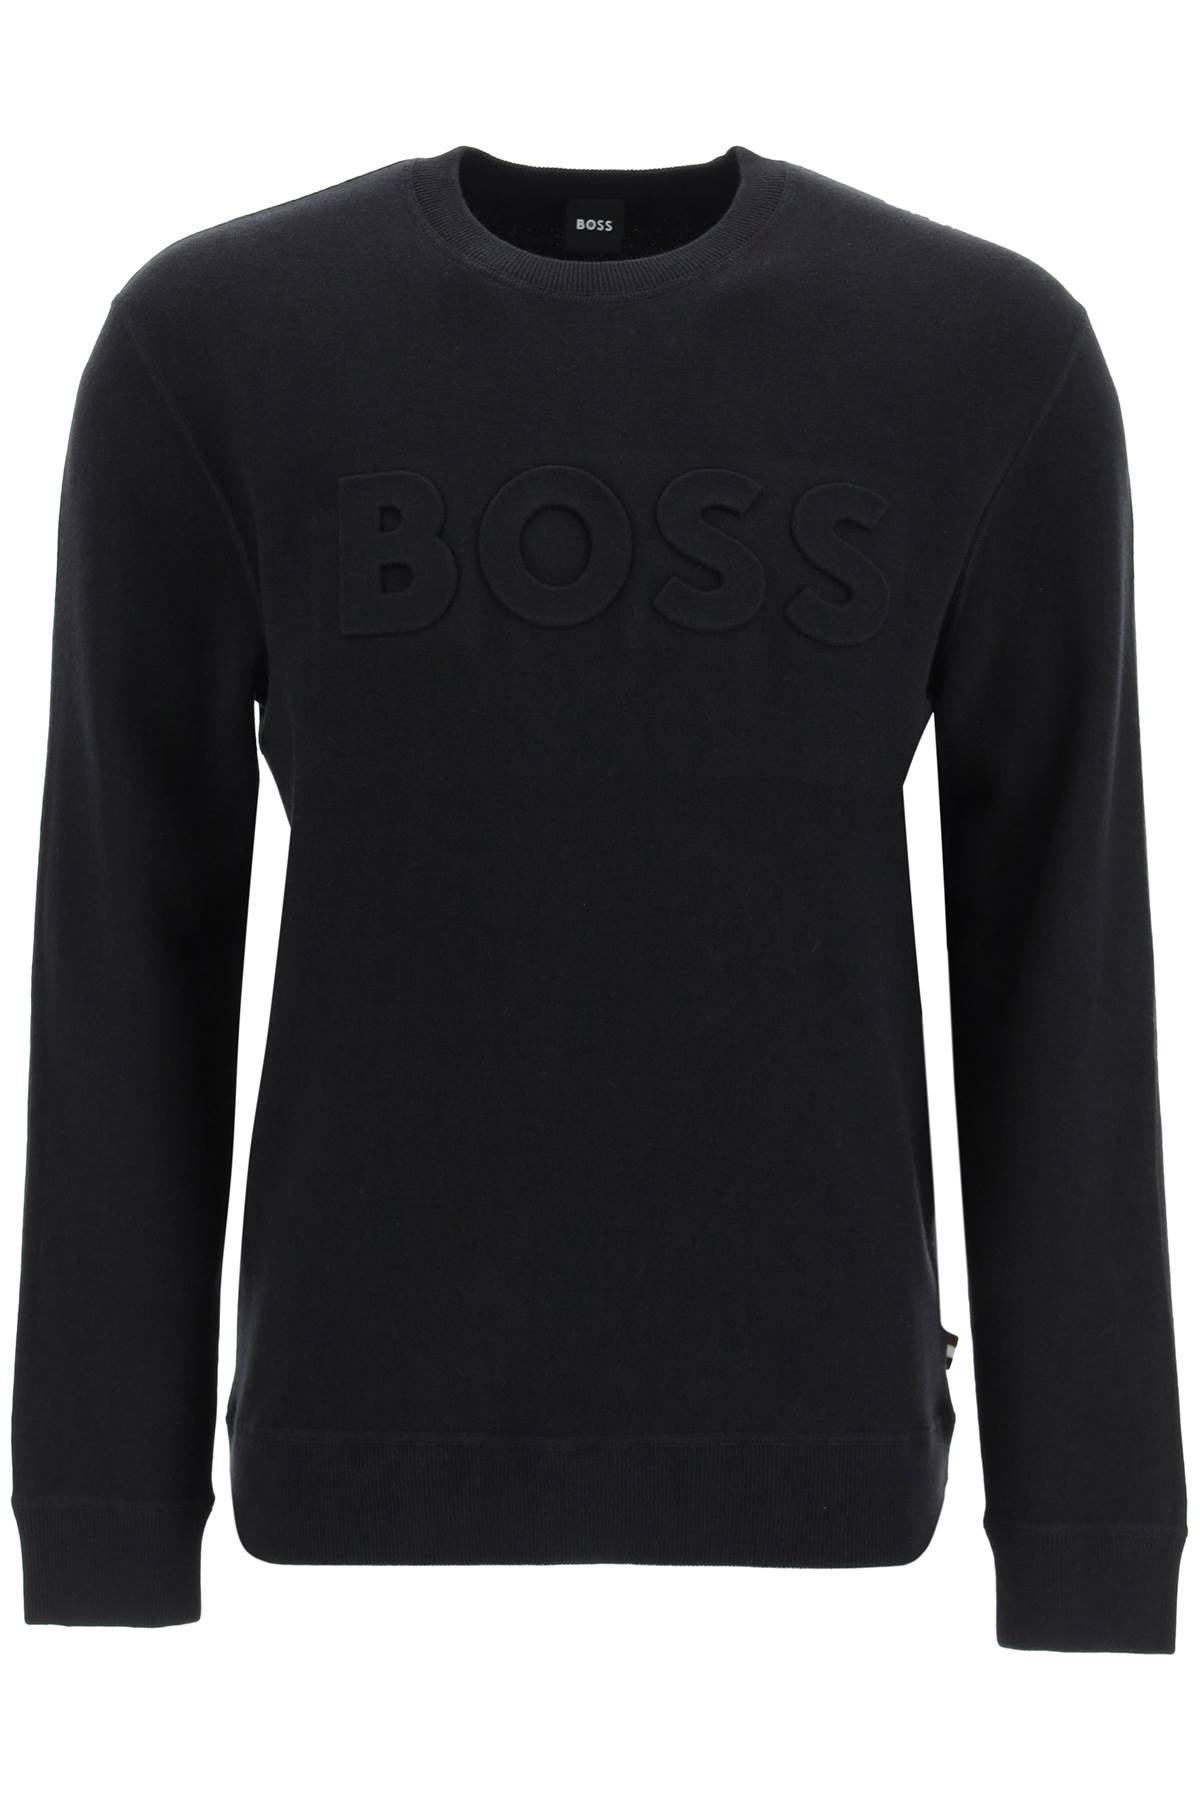 BOSS by HUGO BOSS Embossed Logo Sweater in Black for Men | Lyst